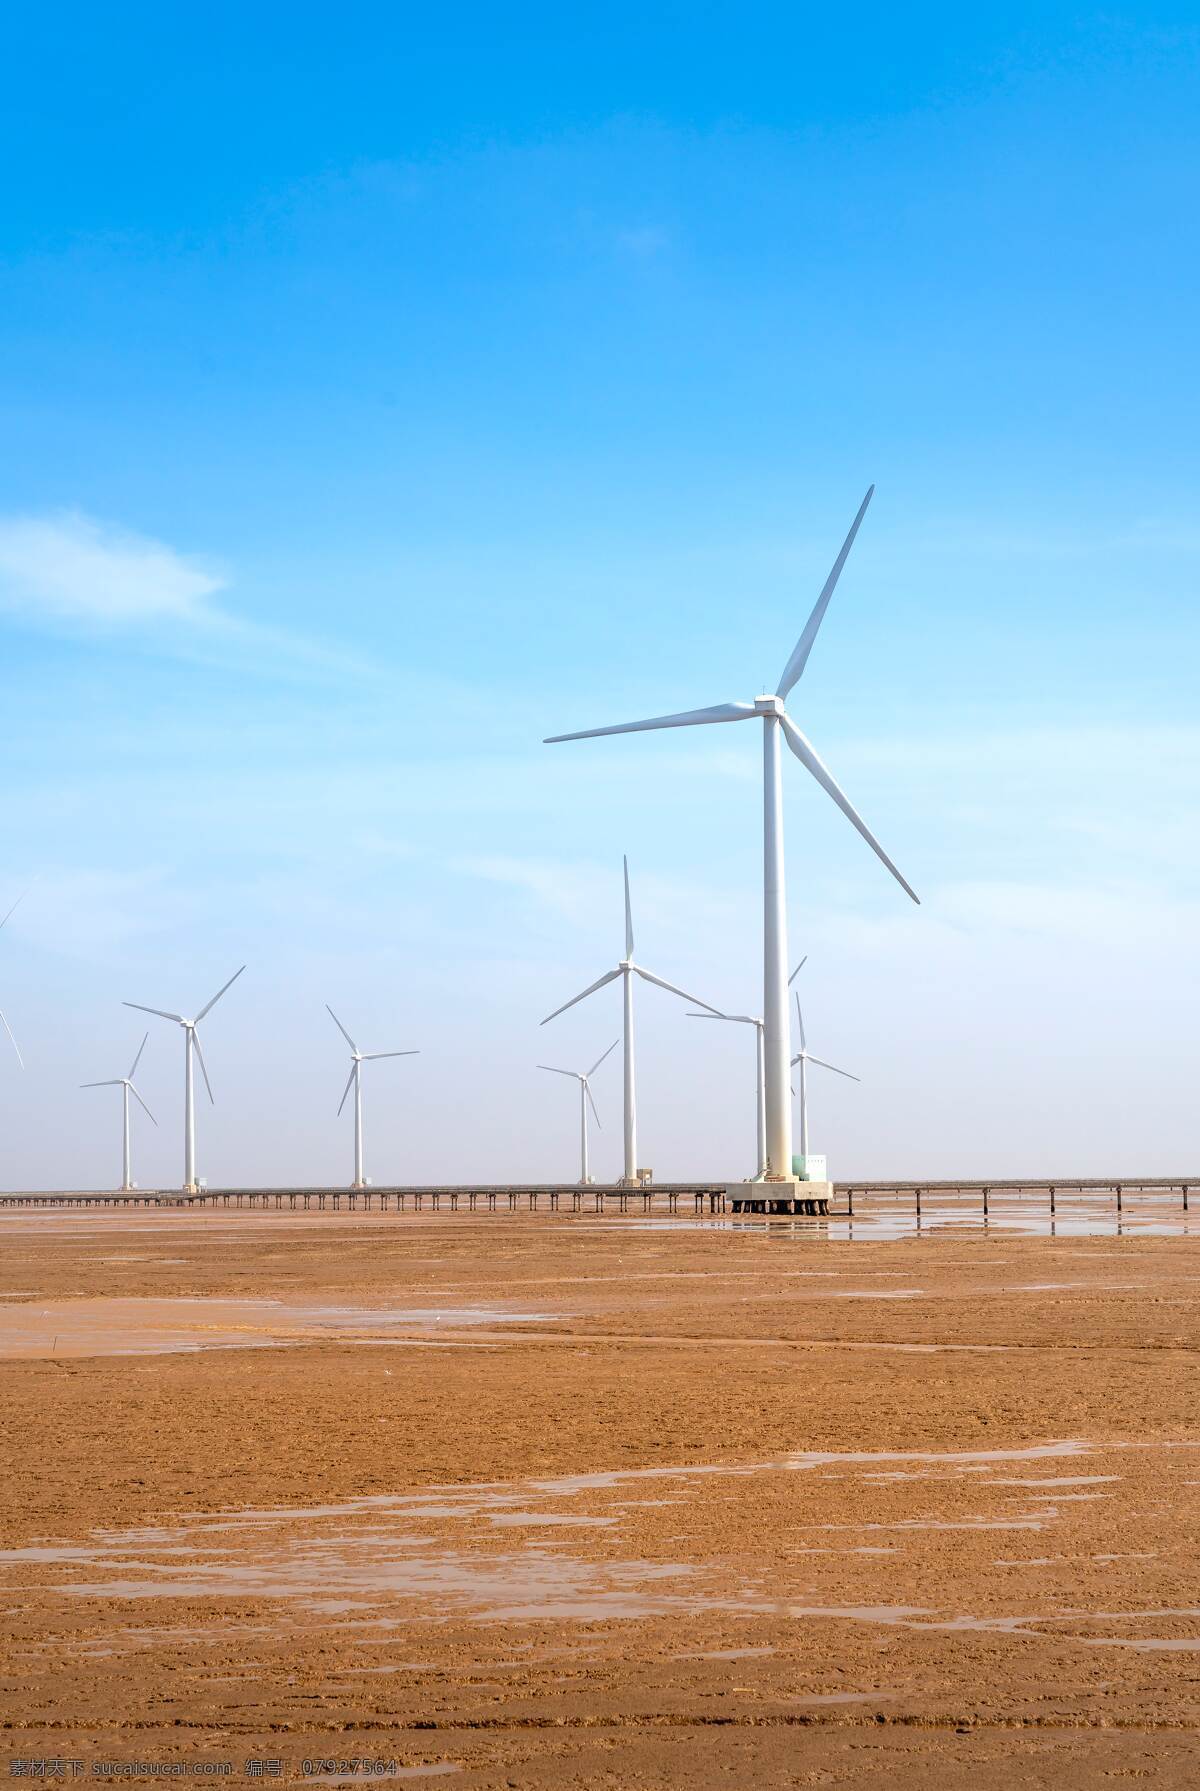 风力发电摄影 风力发电 风电 电力设备 发电设备 电站 风电场 风电站 工业设备 能源发展 能源 环保 新能源 清洁能源 现代科技 工业生产